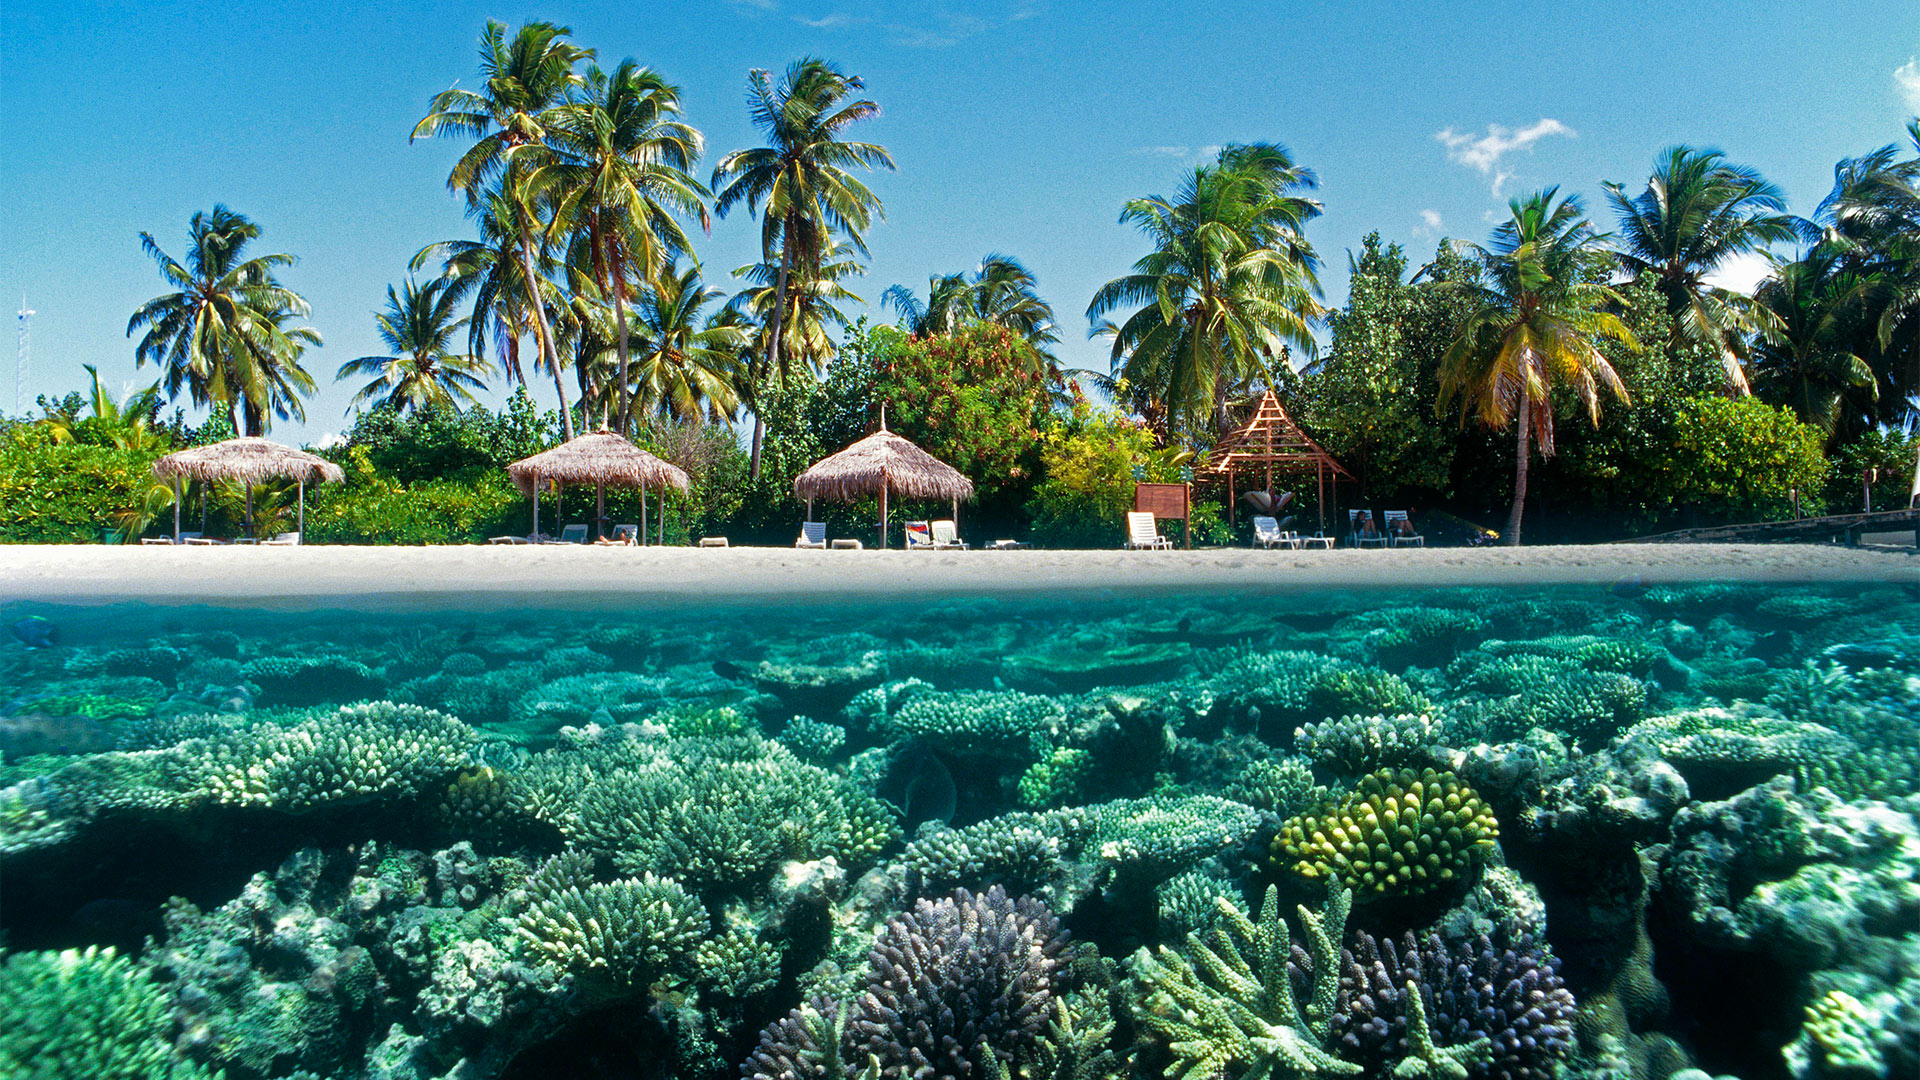 Malediven, Strand und Korallenriff | picture alliance / imageBROKER